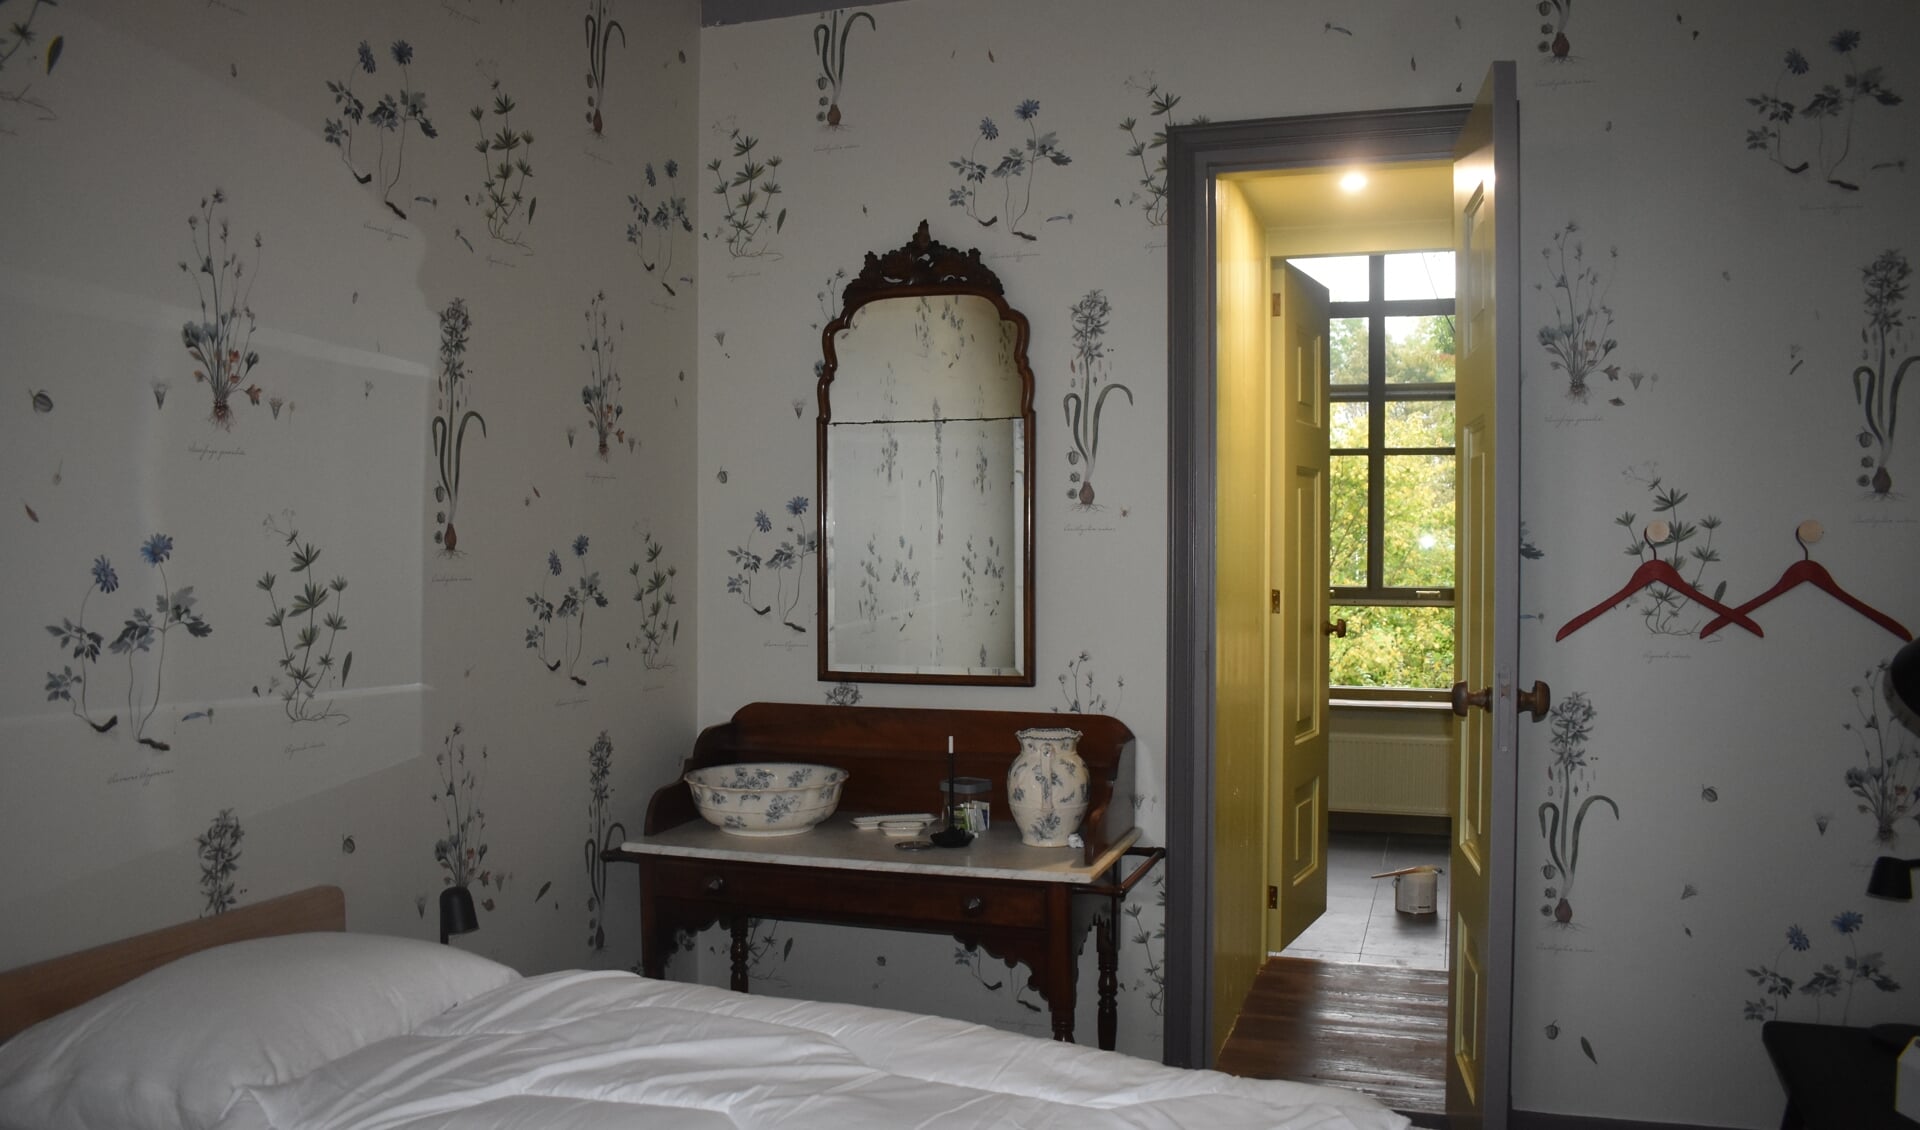 "Verblijven in een 19e-eeuw decor met modern comfort", dat kan in Harsta State bij Hegebeintum. Op 9 en 10 september ook te bezichtigen.